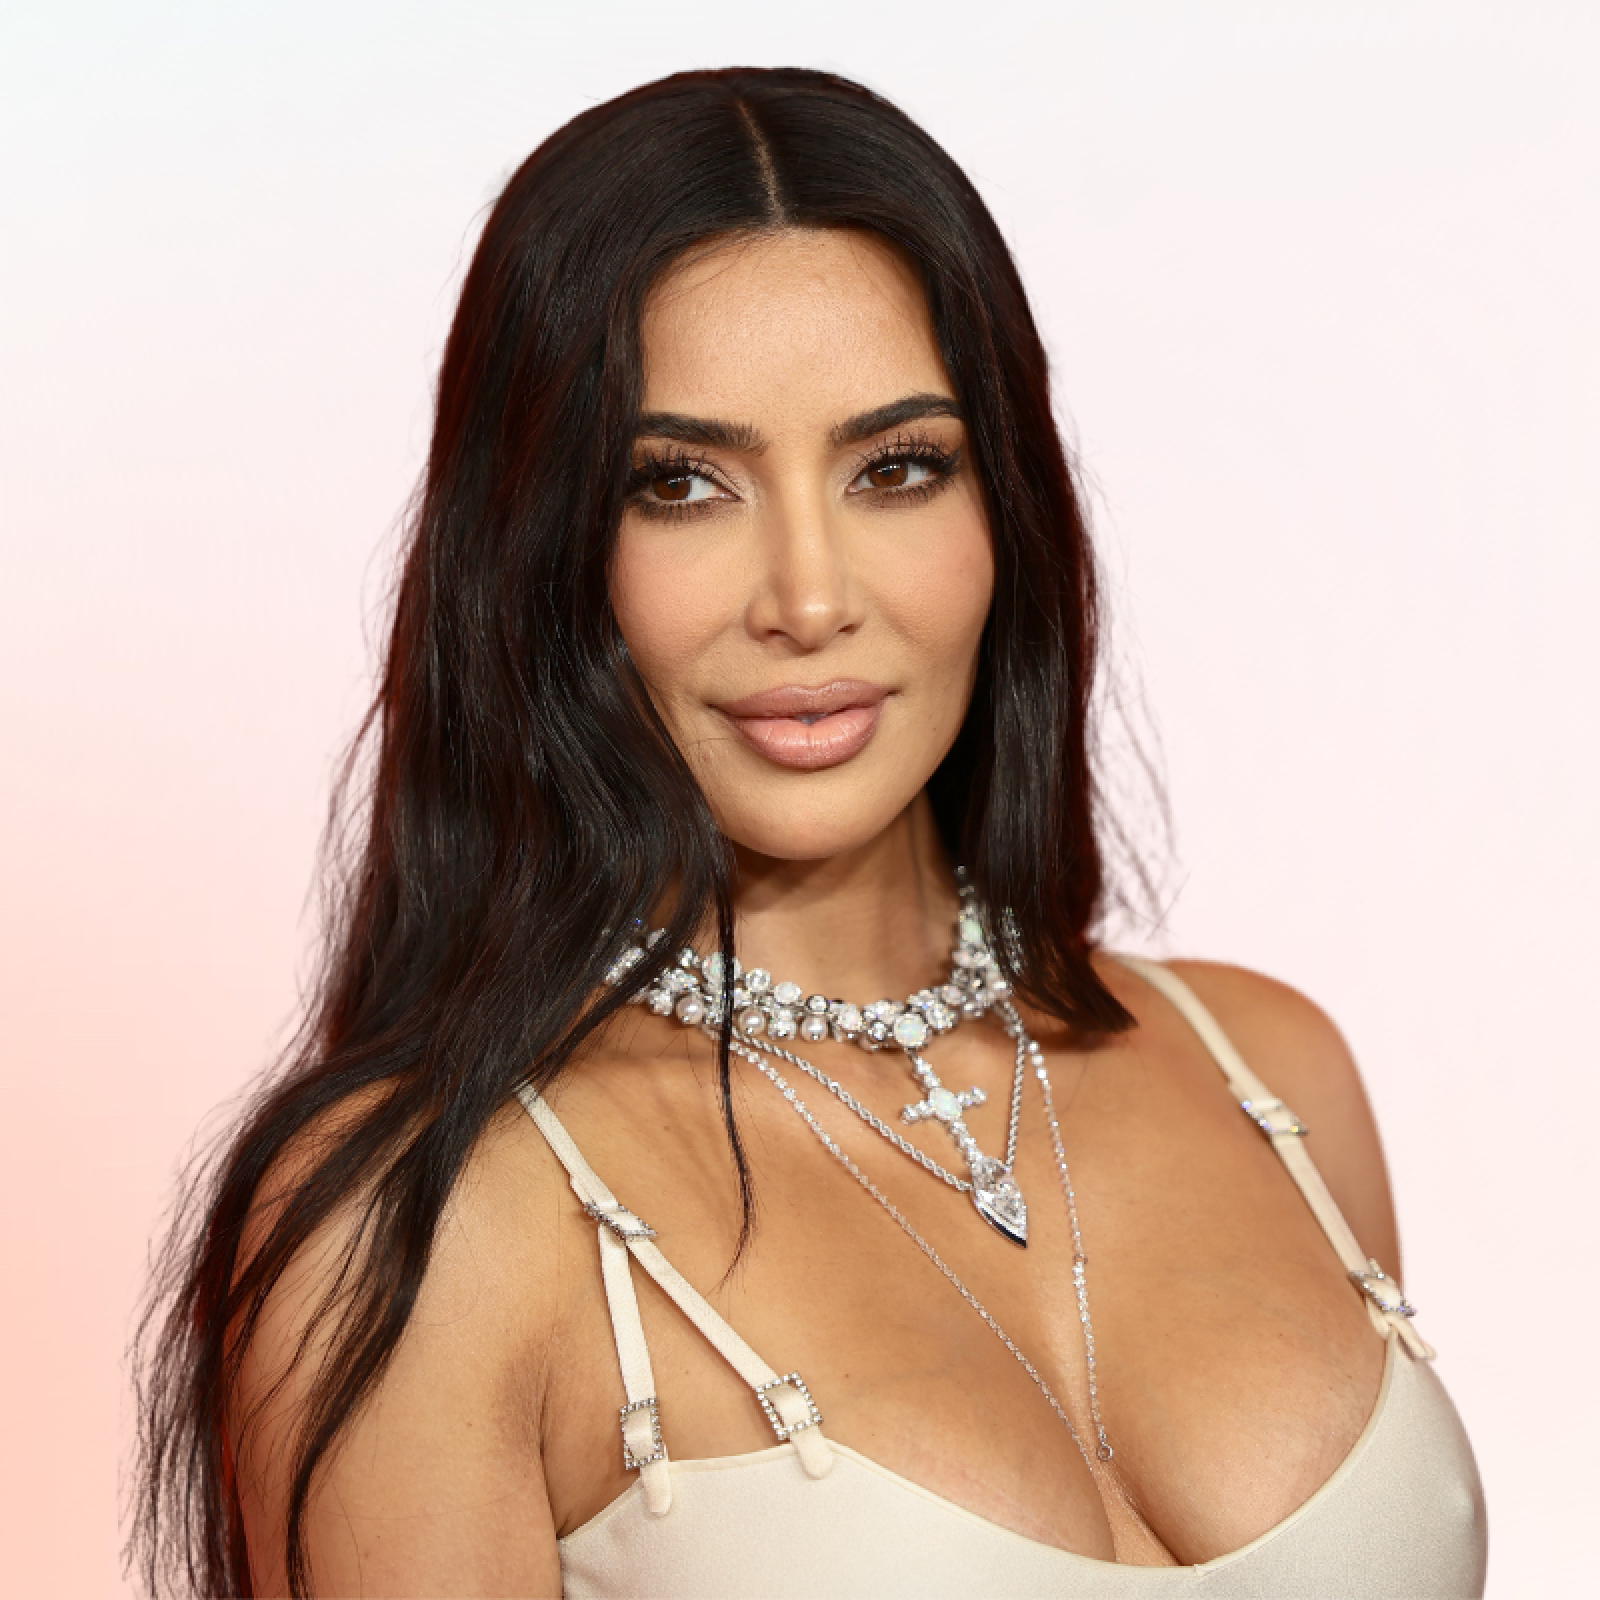 Kim Kardashian Corset Photo Slammed